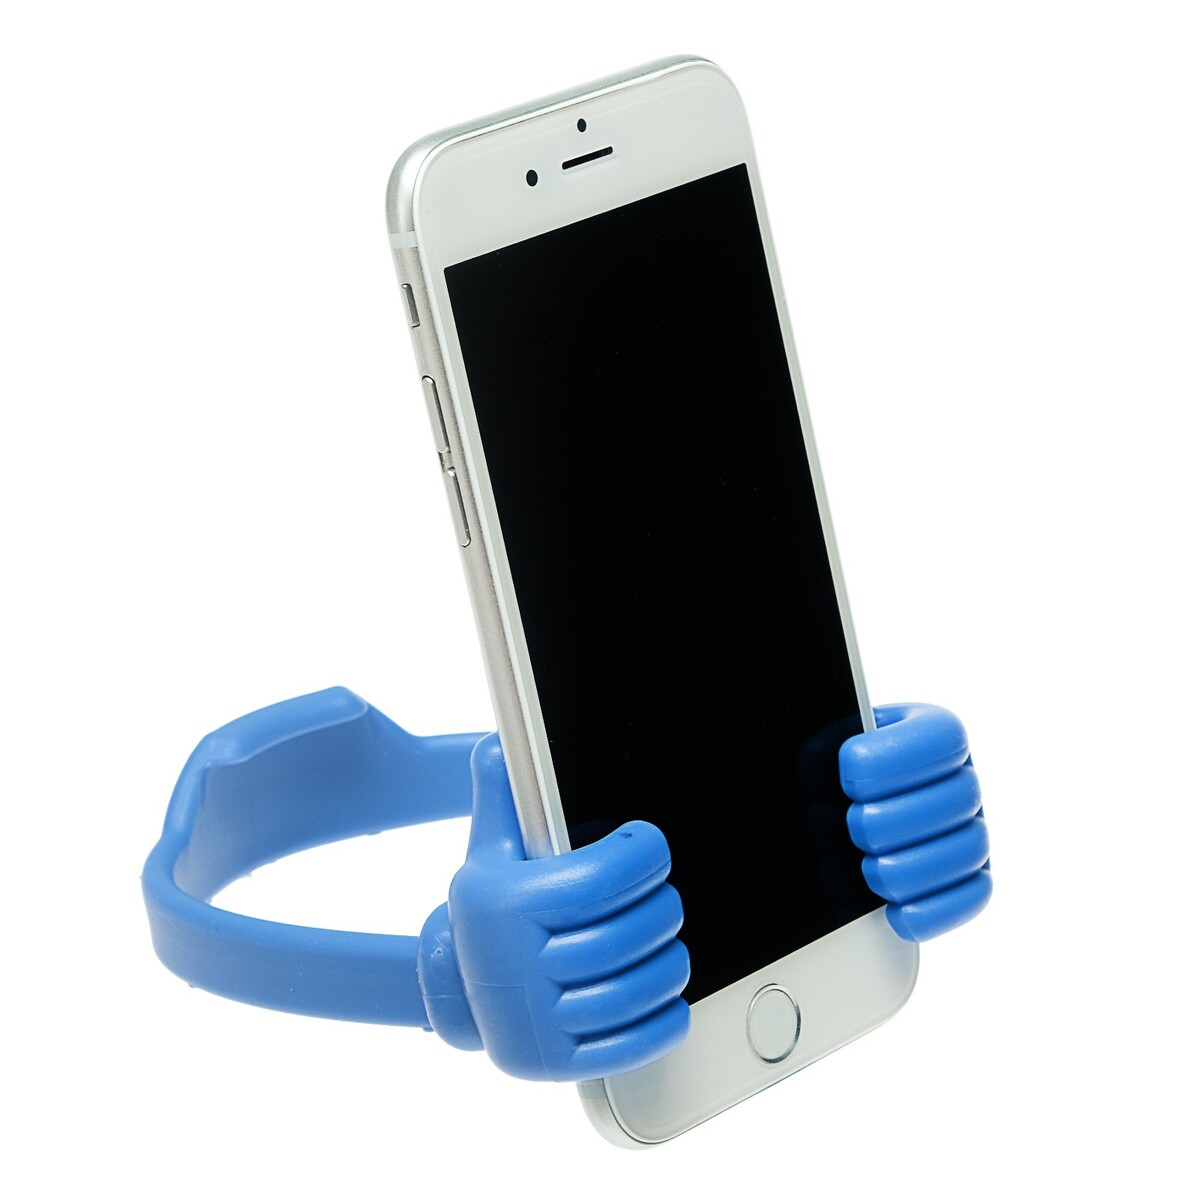 Подставка для телефона luazon, в форме рук, регулируемая ширина, синяя держатель подставка попсокет для телефона luazon с креплением